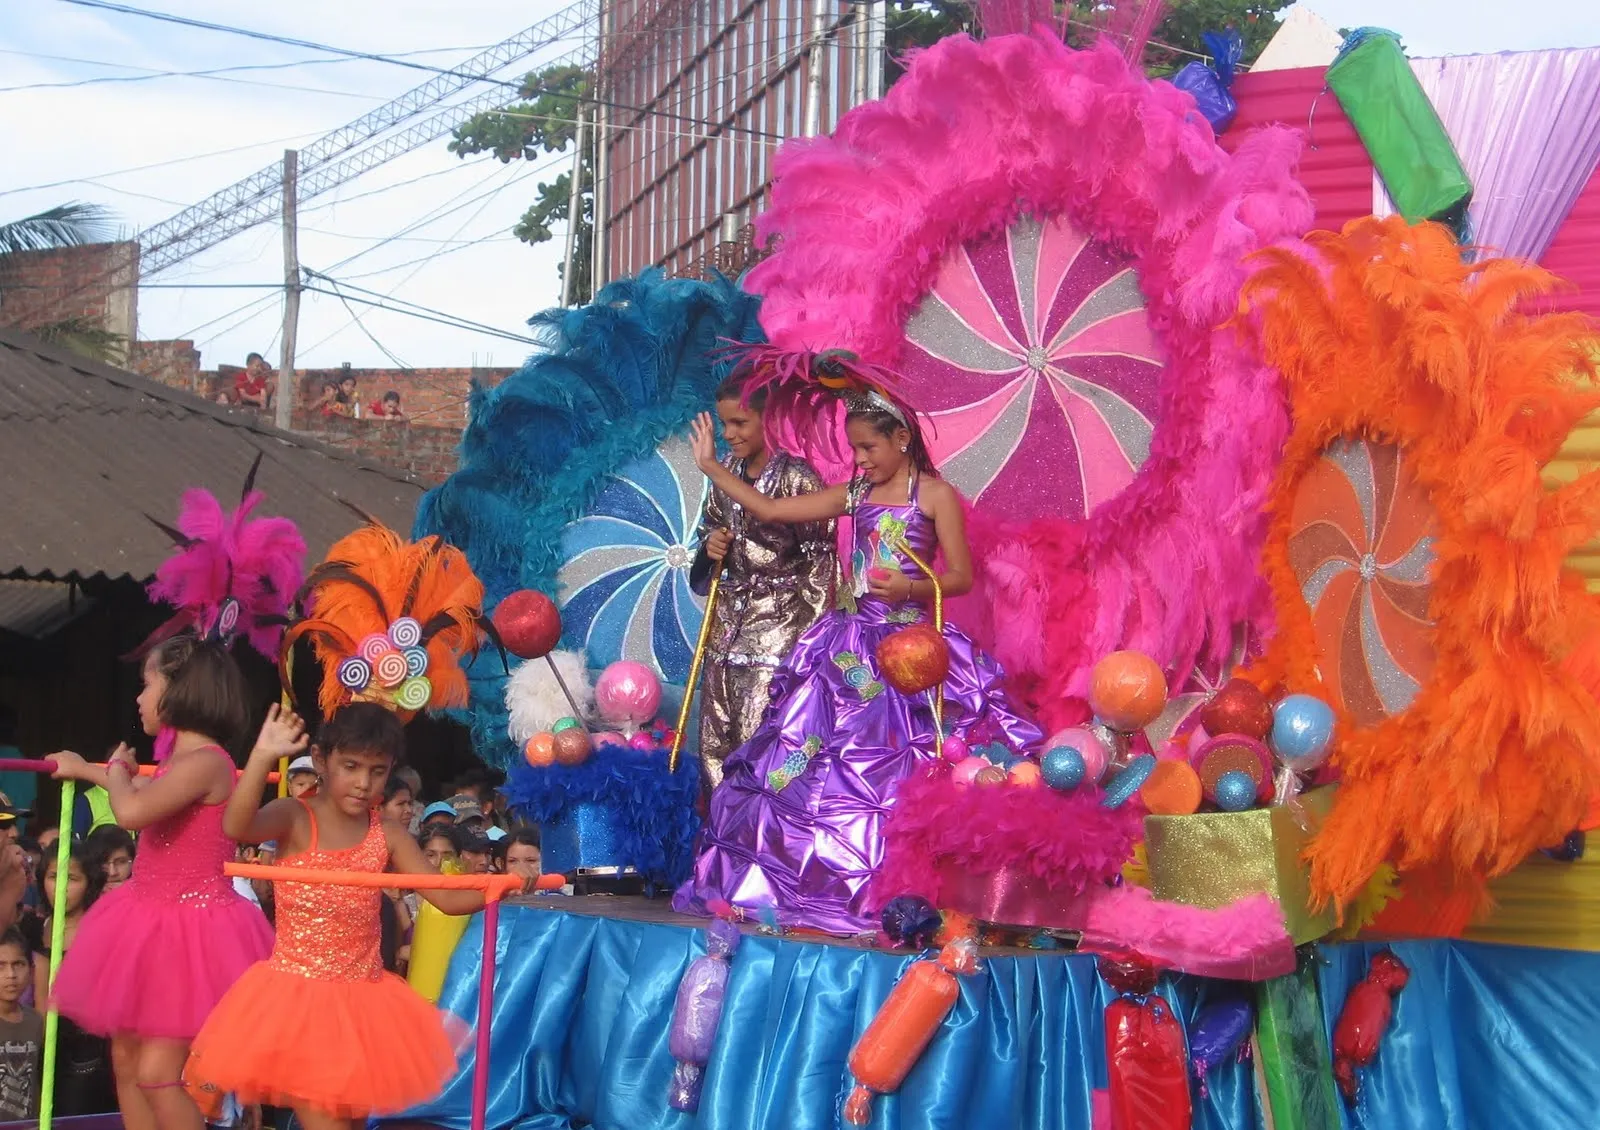 Reina Infantil Del Carnaval Las Deliciasmaria Alejandra Ganoza Cacho